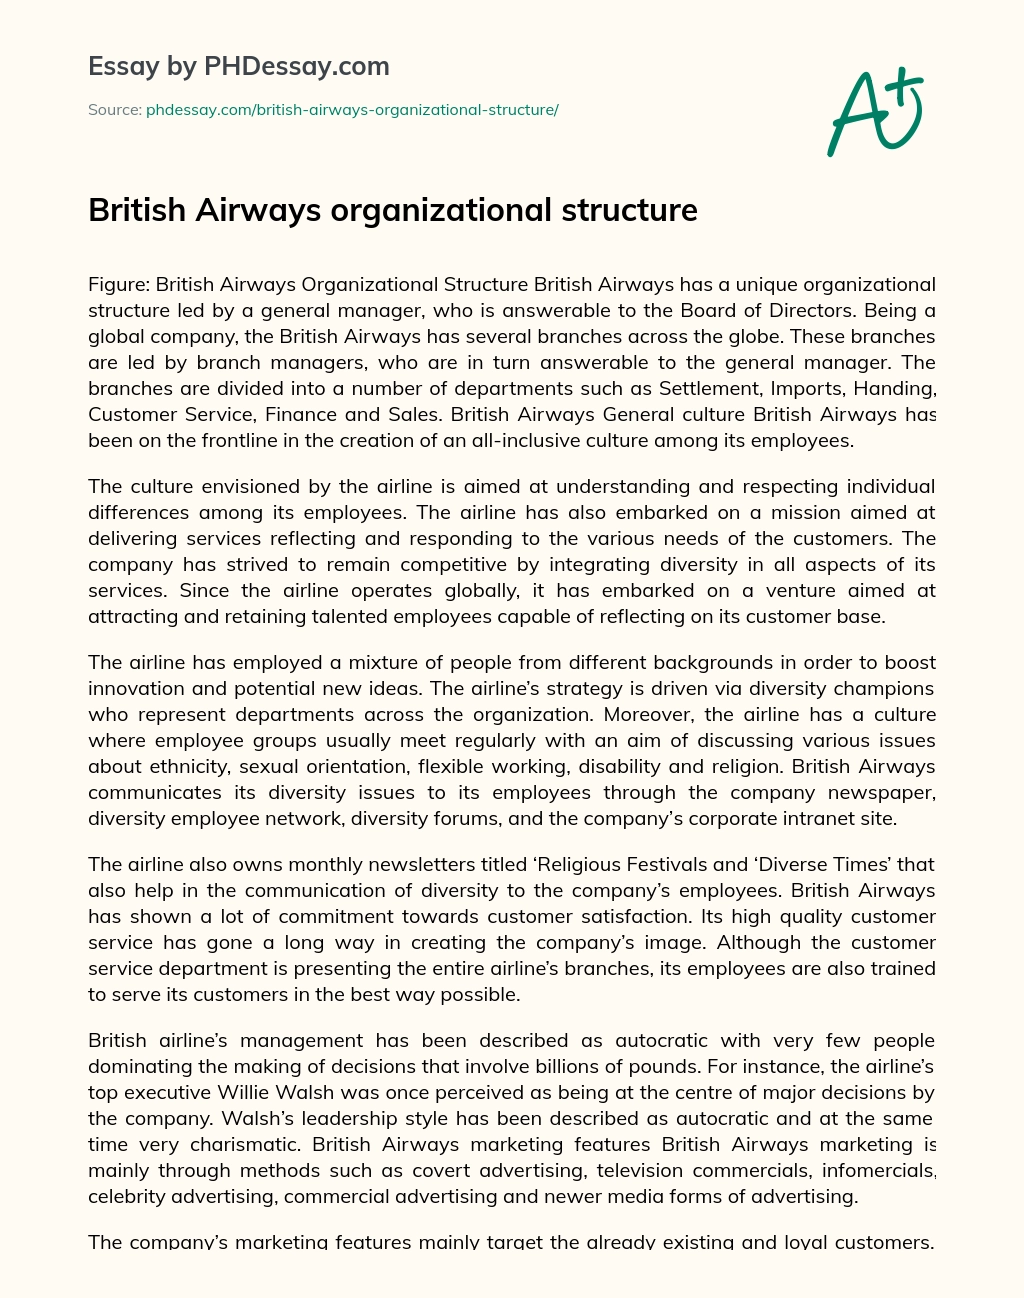 British Airways organizational structure essay